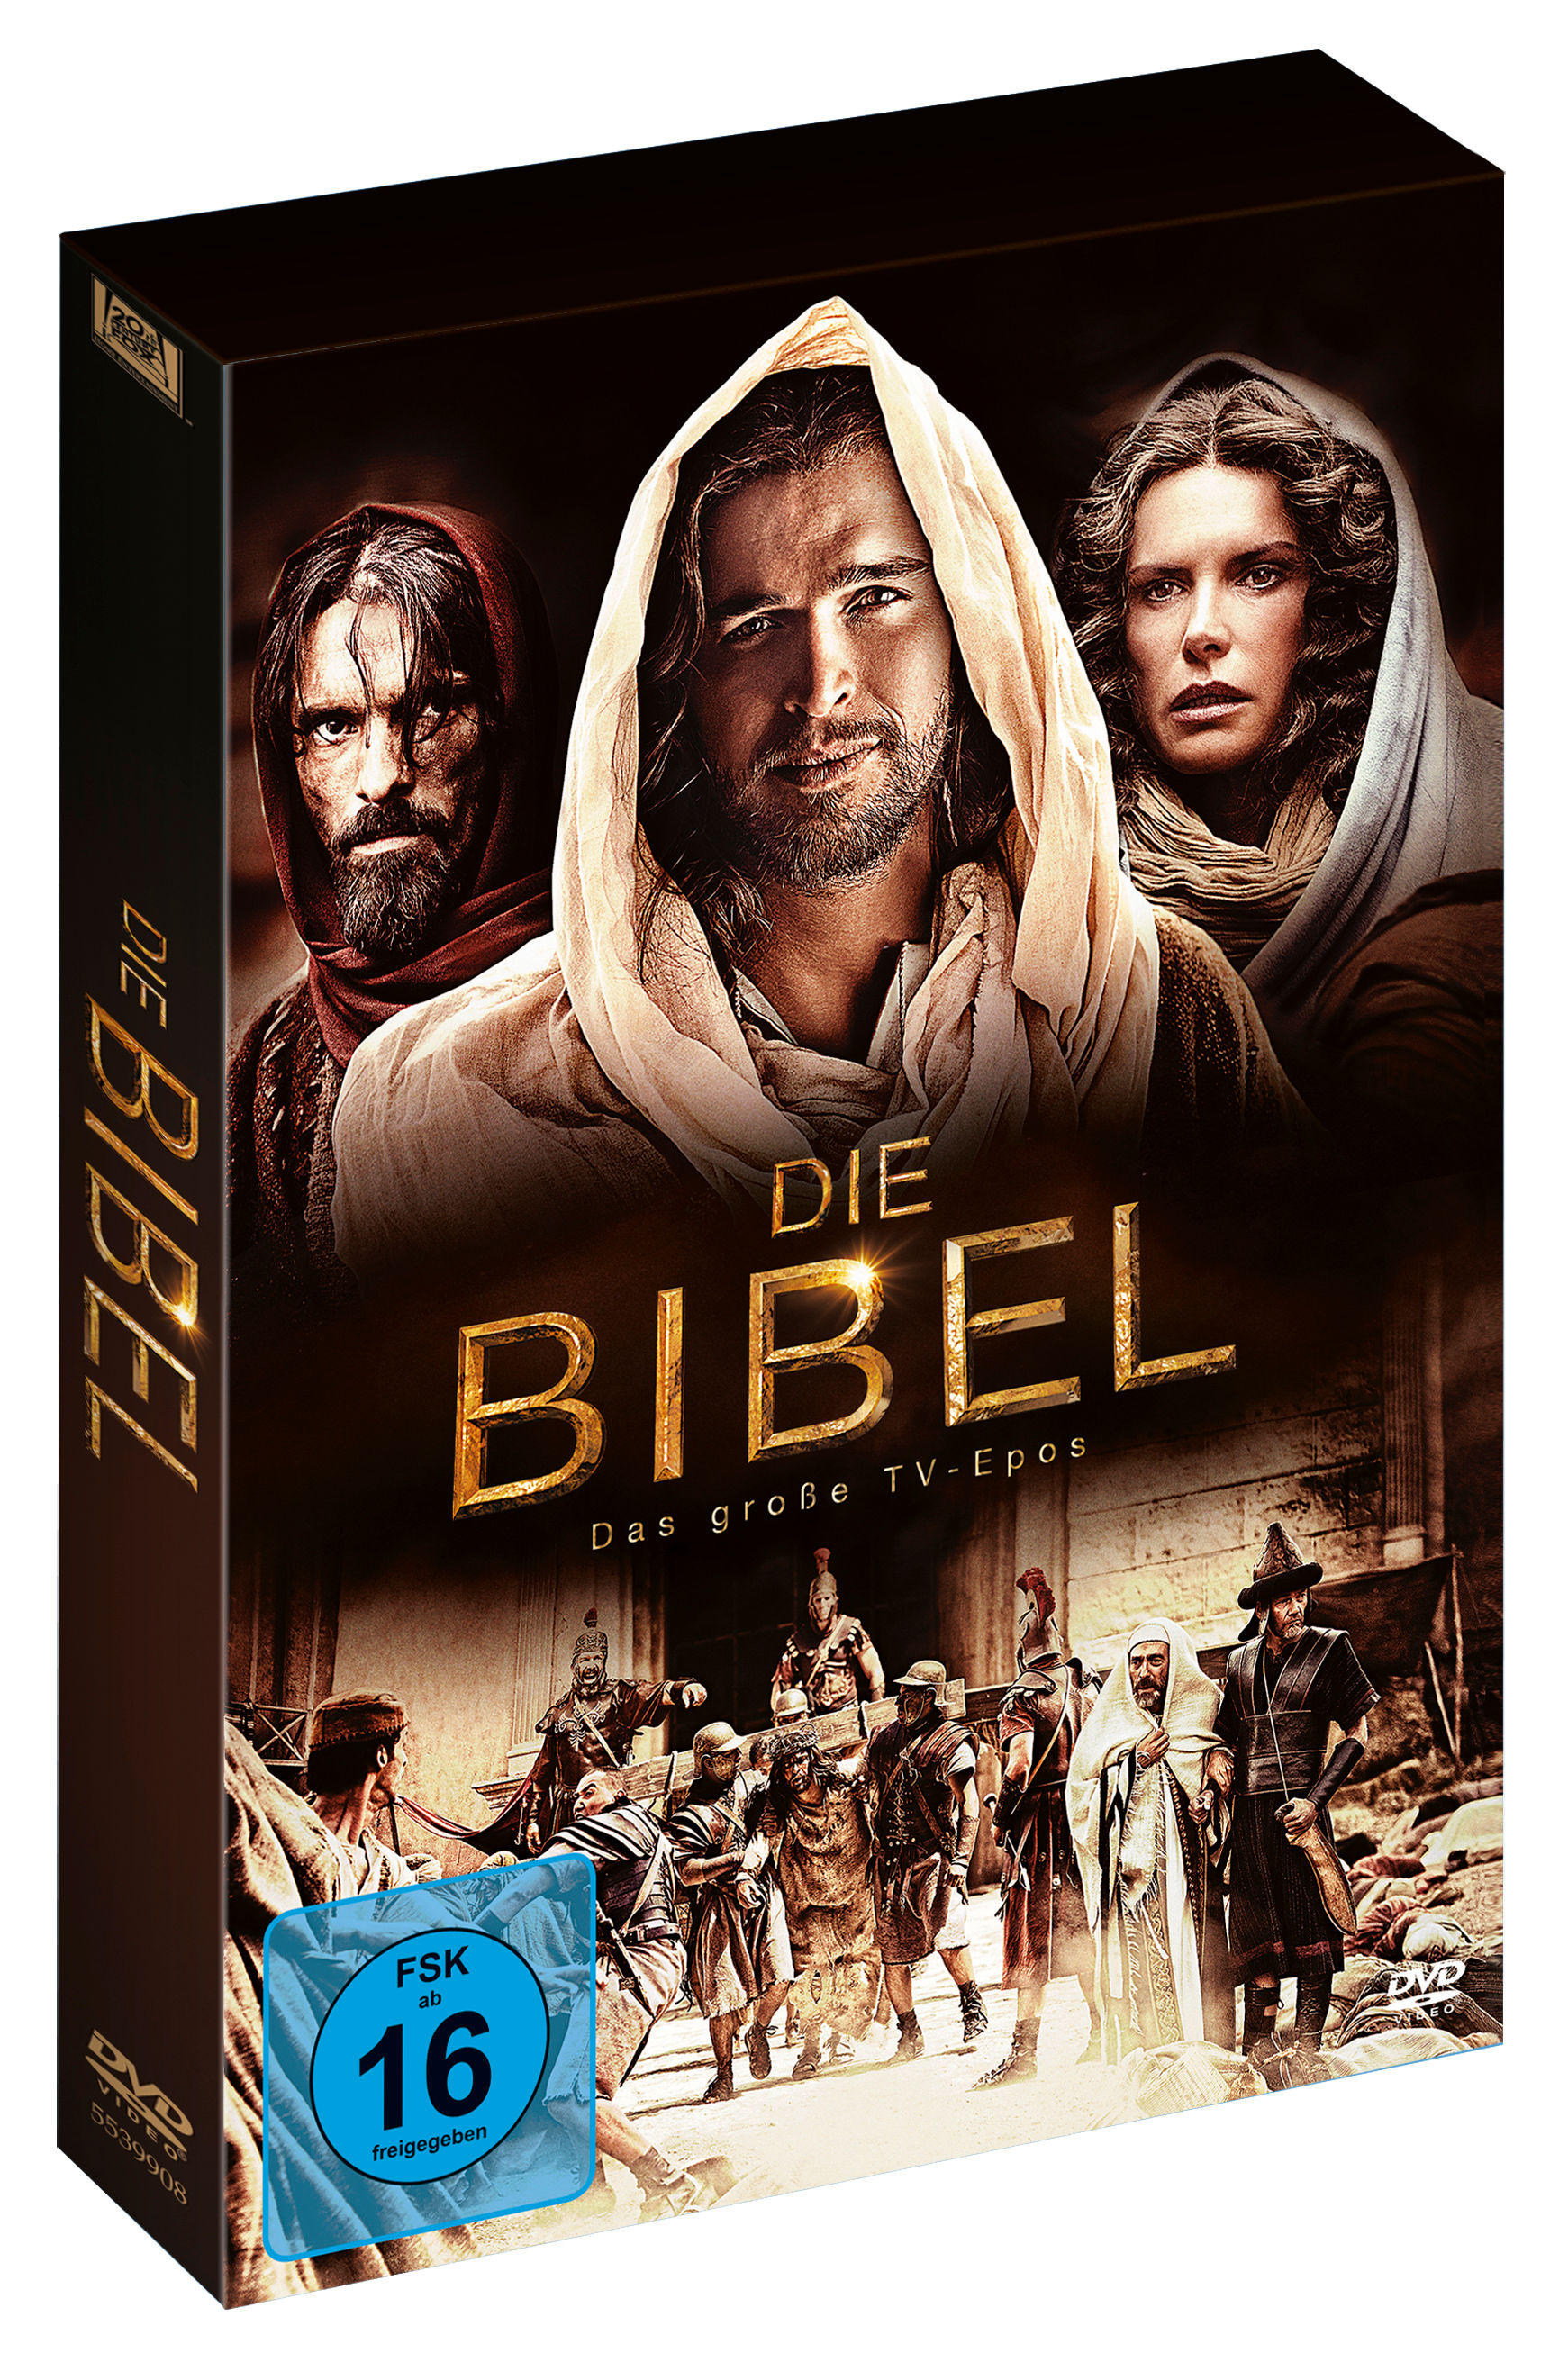 Image of Die Bibel (2013)